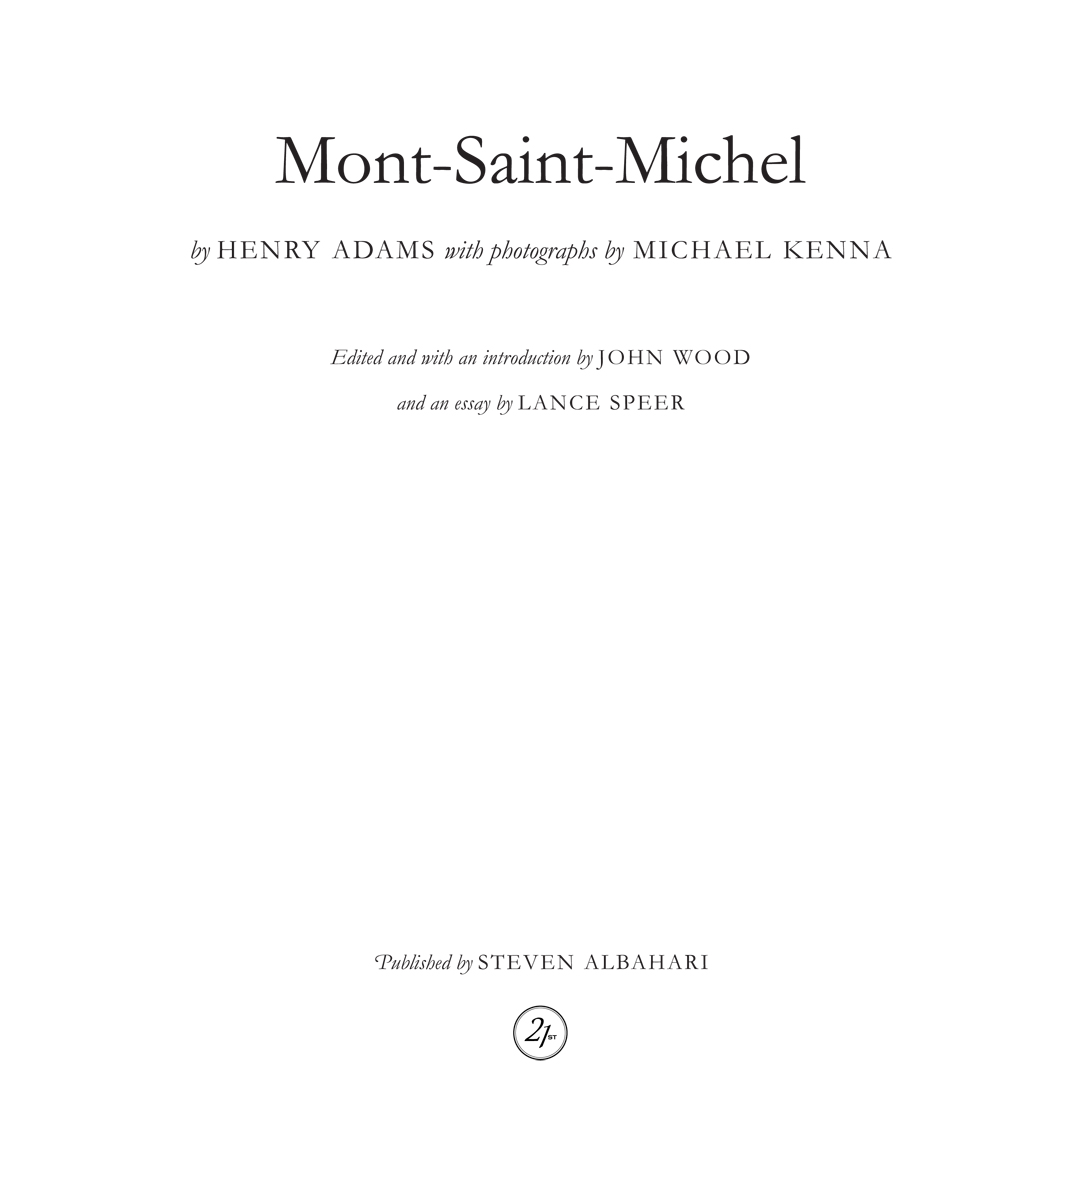 Henry Adams, Mont-Saint-Michel